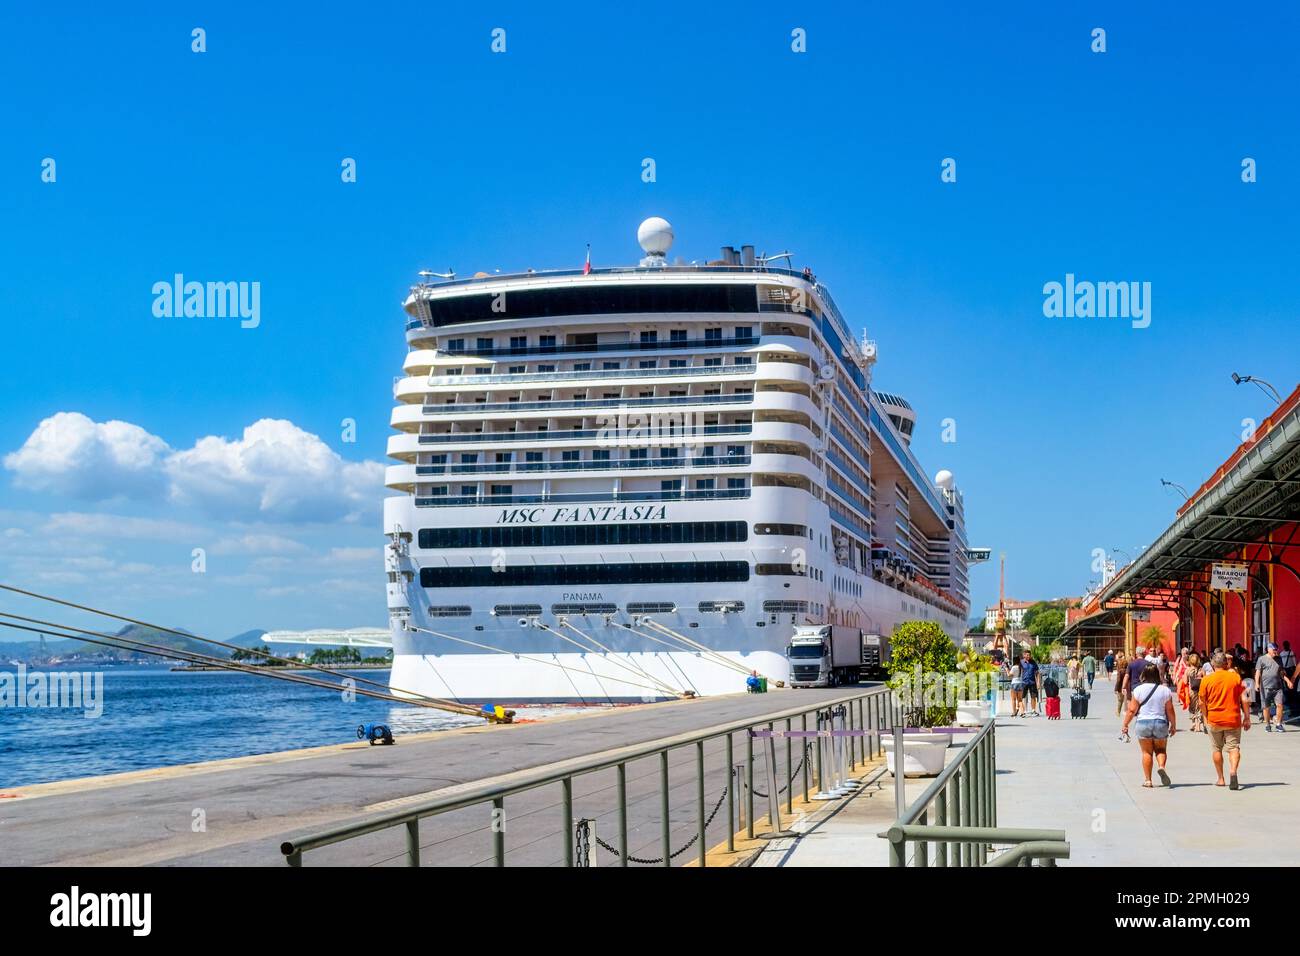 Rio de Janeiro, Brasile - 4 aprile 2023: Terminal delle navi da crociera. Persone che camminano verso la nave da crociera MSC Fantasia Vista posteriore di una crociera ormeggiata ad un capolinea Foto Stock